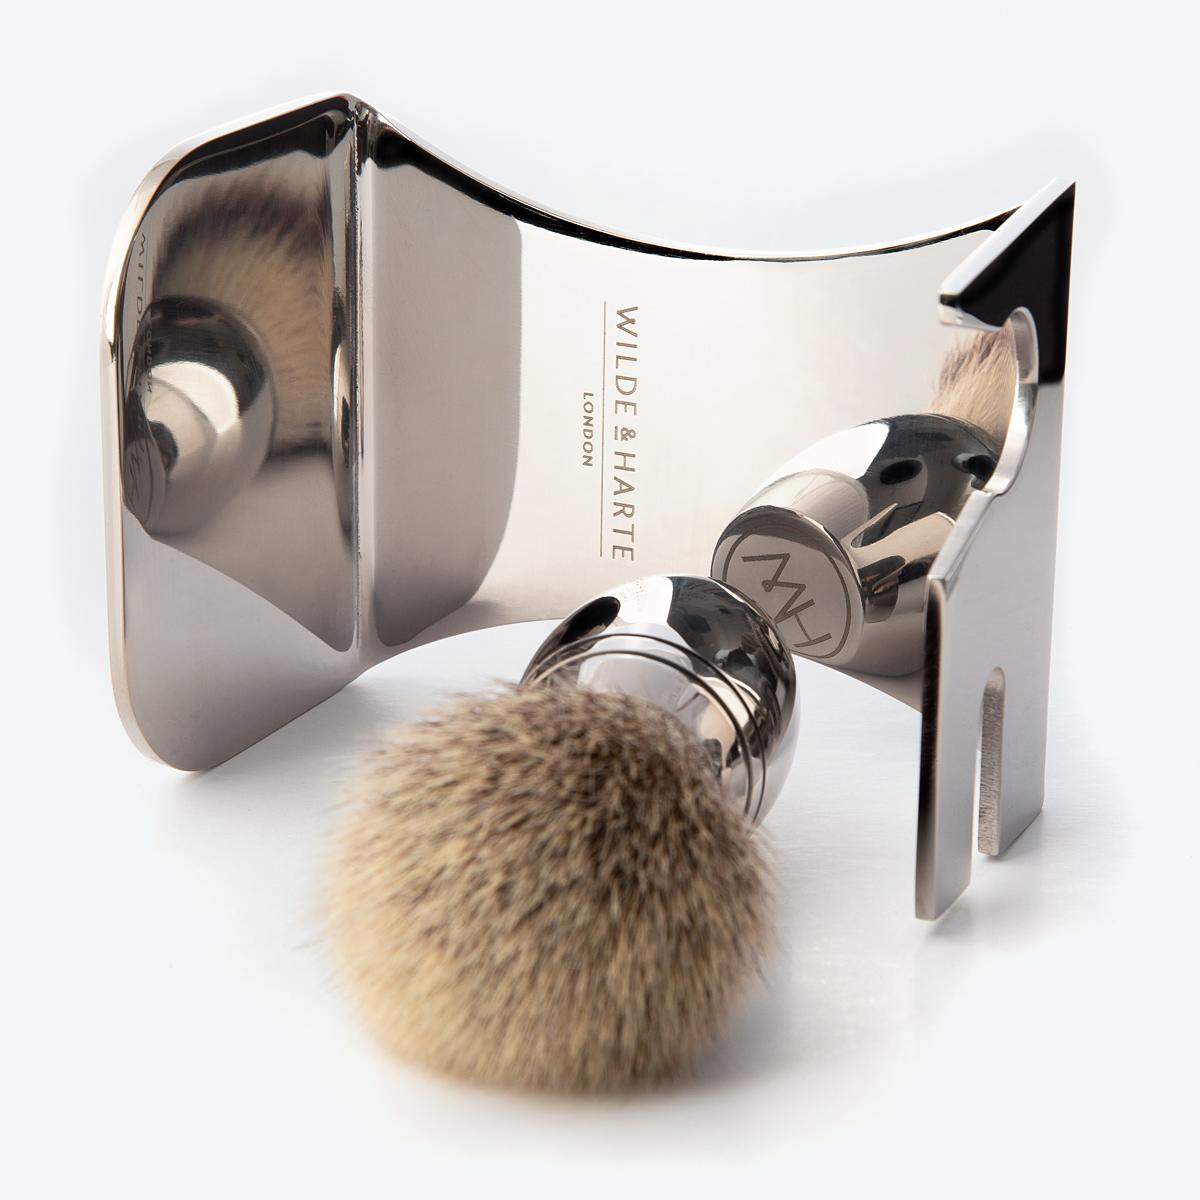 stainless steel shaving set stand for razor and shaving brush